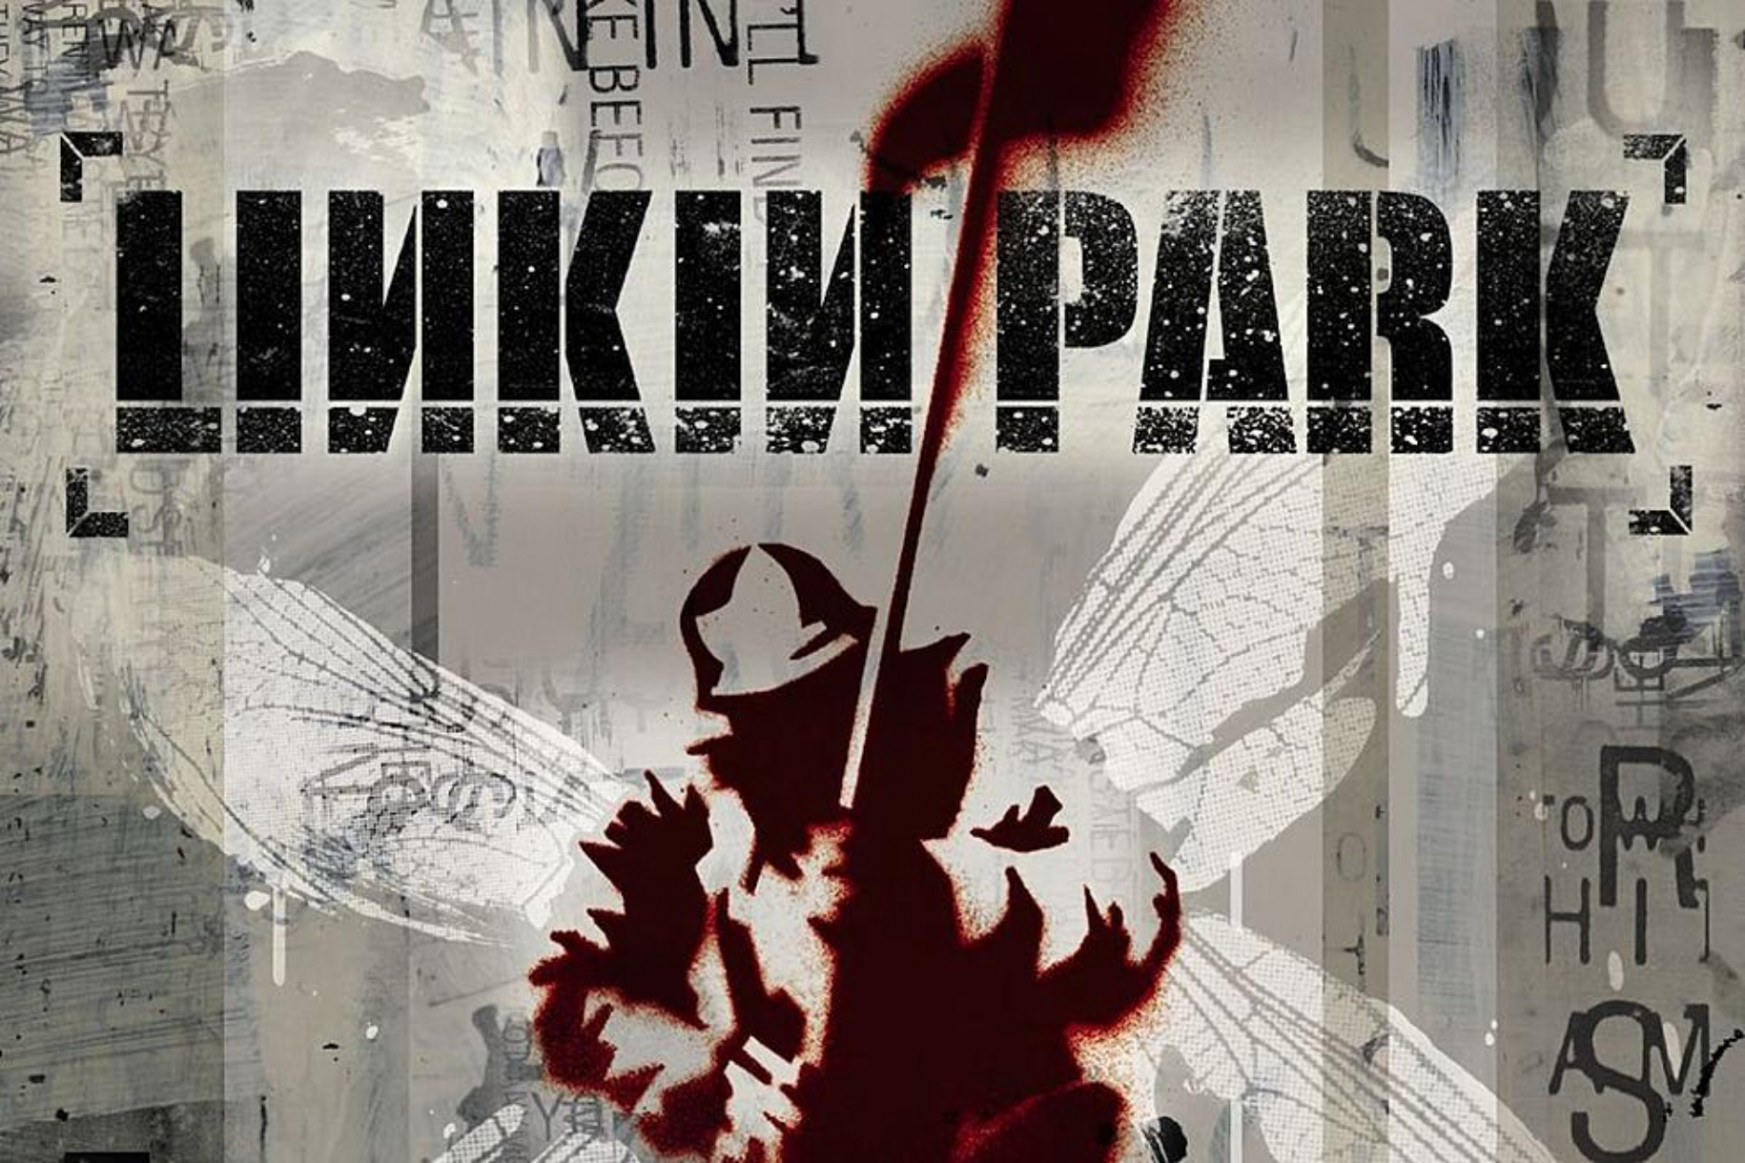 Ma 20 éve jelent meg a Linkin Park bemutatkozó albuma